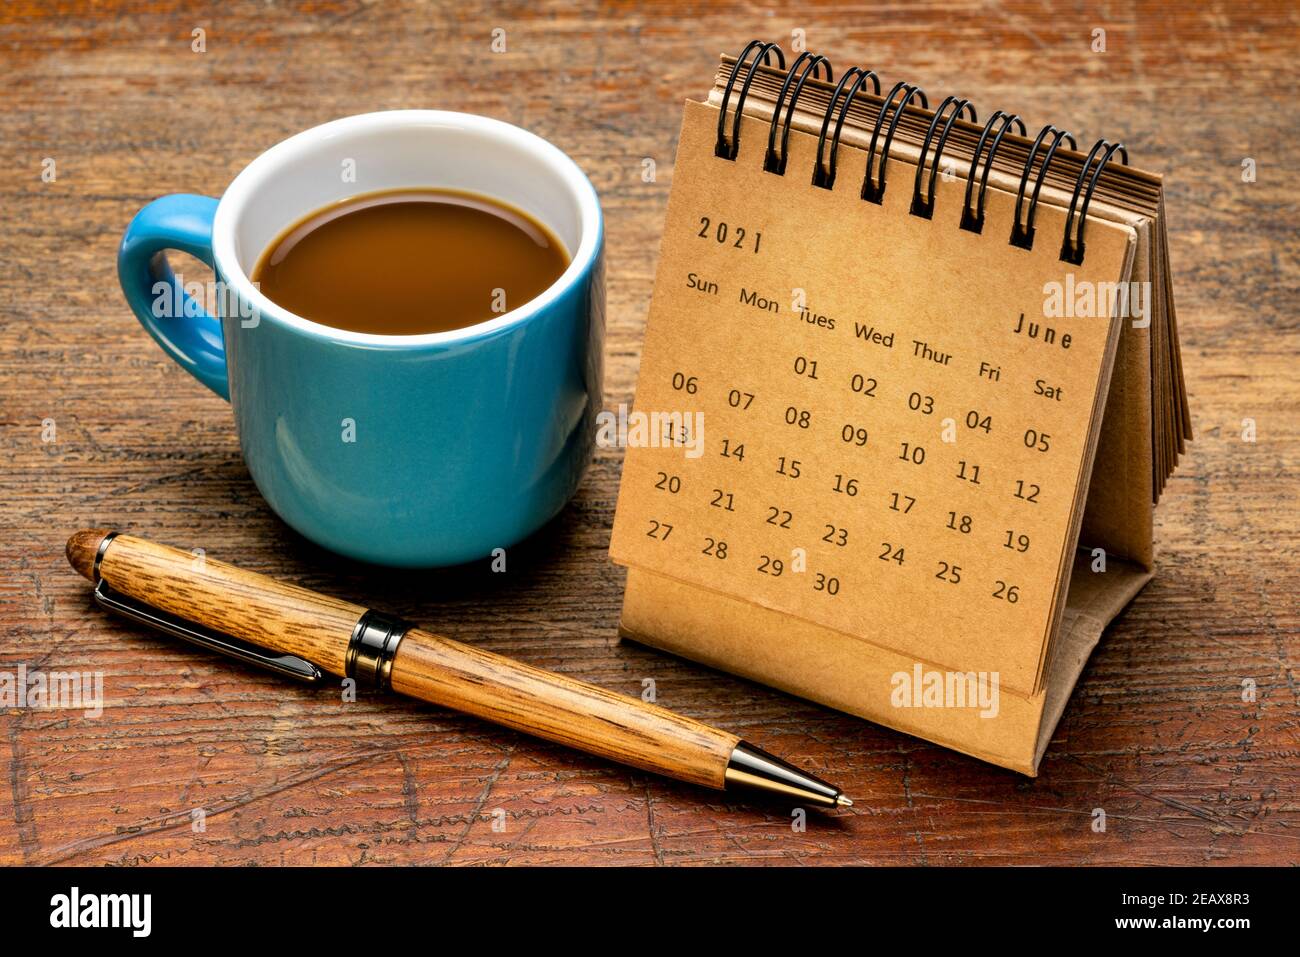 Juni 2021 - Spiralkalender gegen rustikal verwittertes Holz mit einer Tasse Kaffee, Zeit und Geschäftskonzept Stockfoto